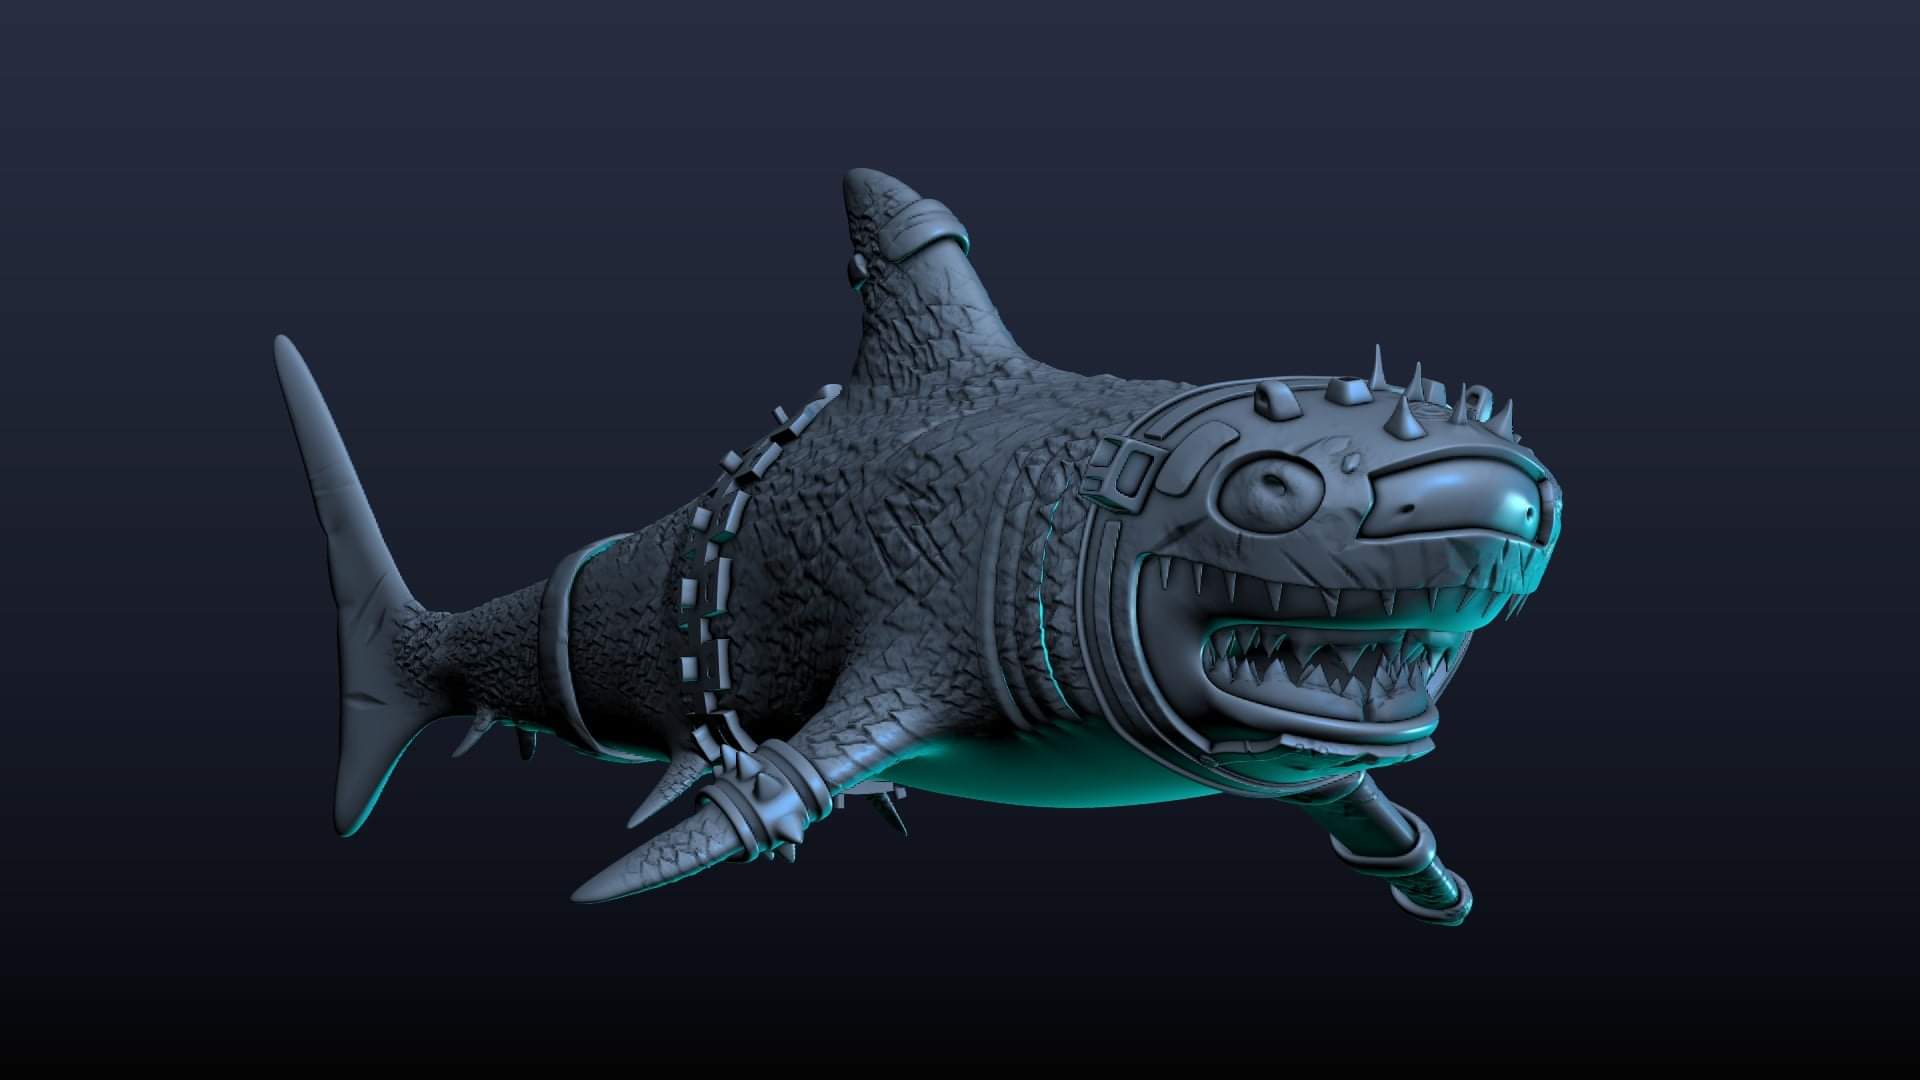 Lemplim on X: Armor shark blender 2.79 #3d #lemplim #blender #game  #modelling  / X